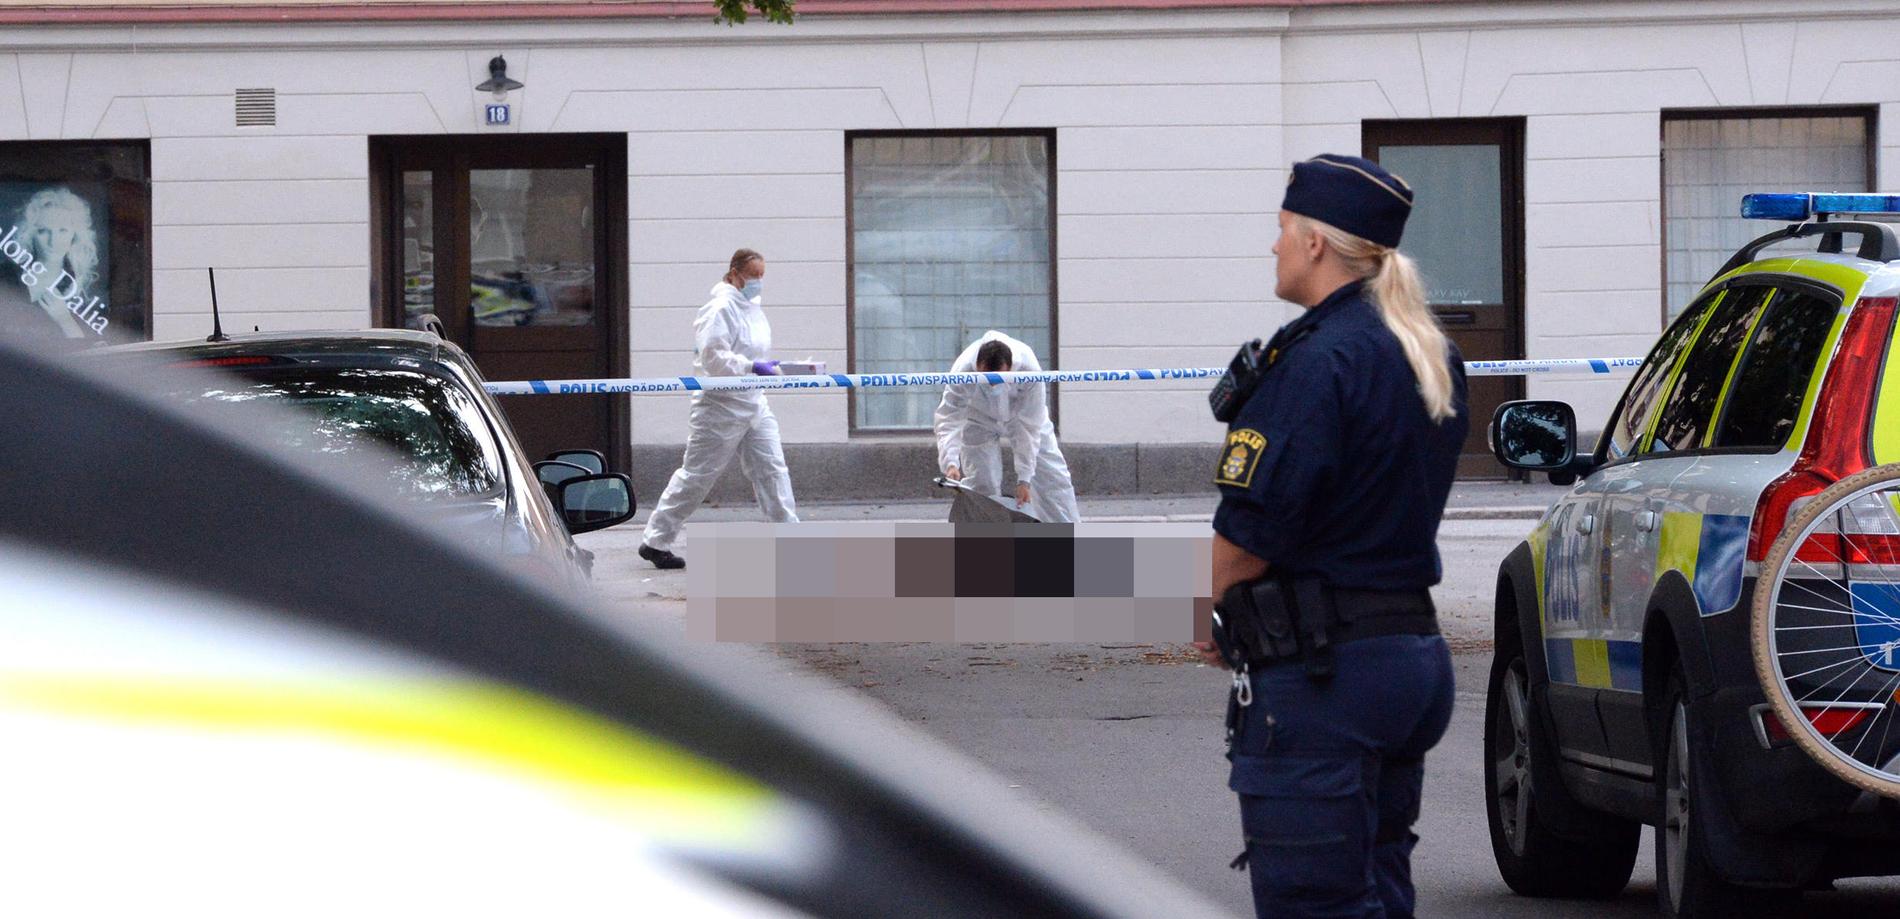 Vid tretiden på natten till måndagen fick polisen larm om en livlös person på en gata i Örebro. 